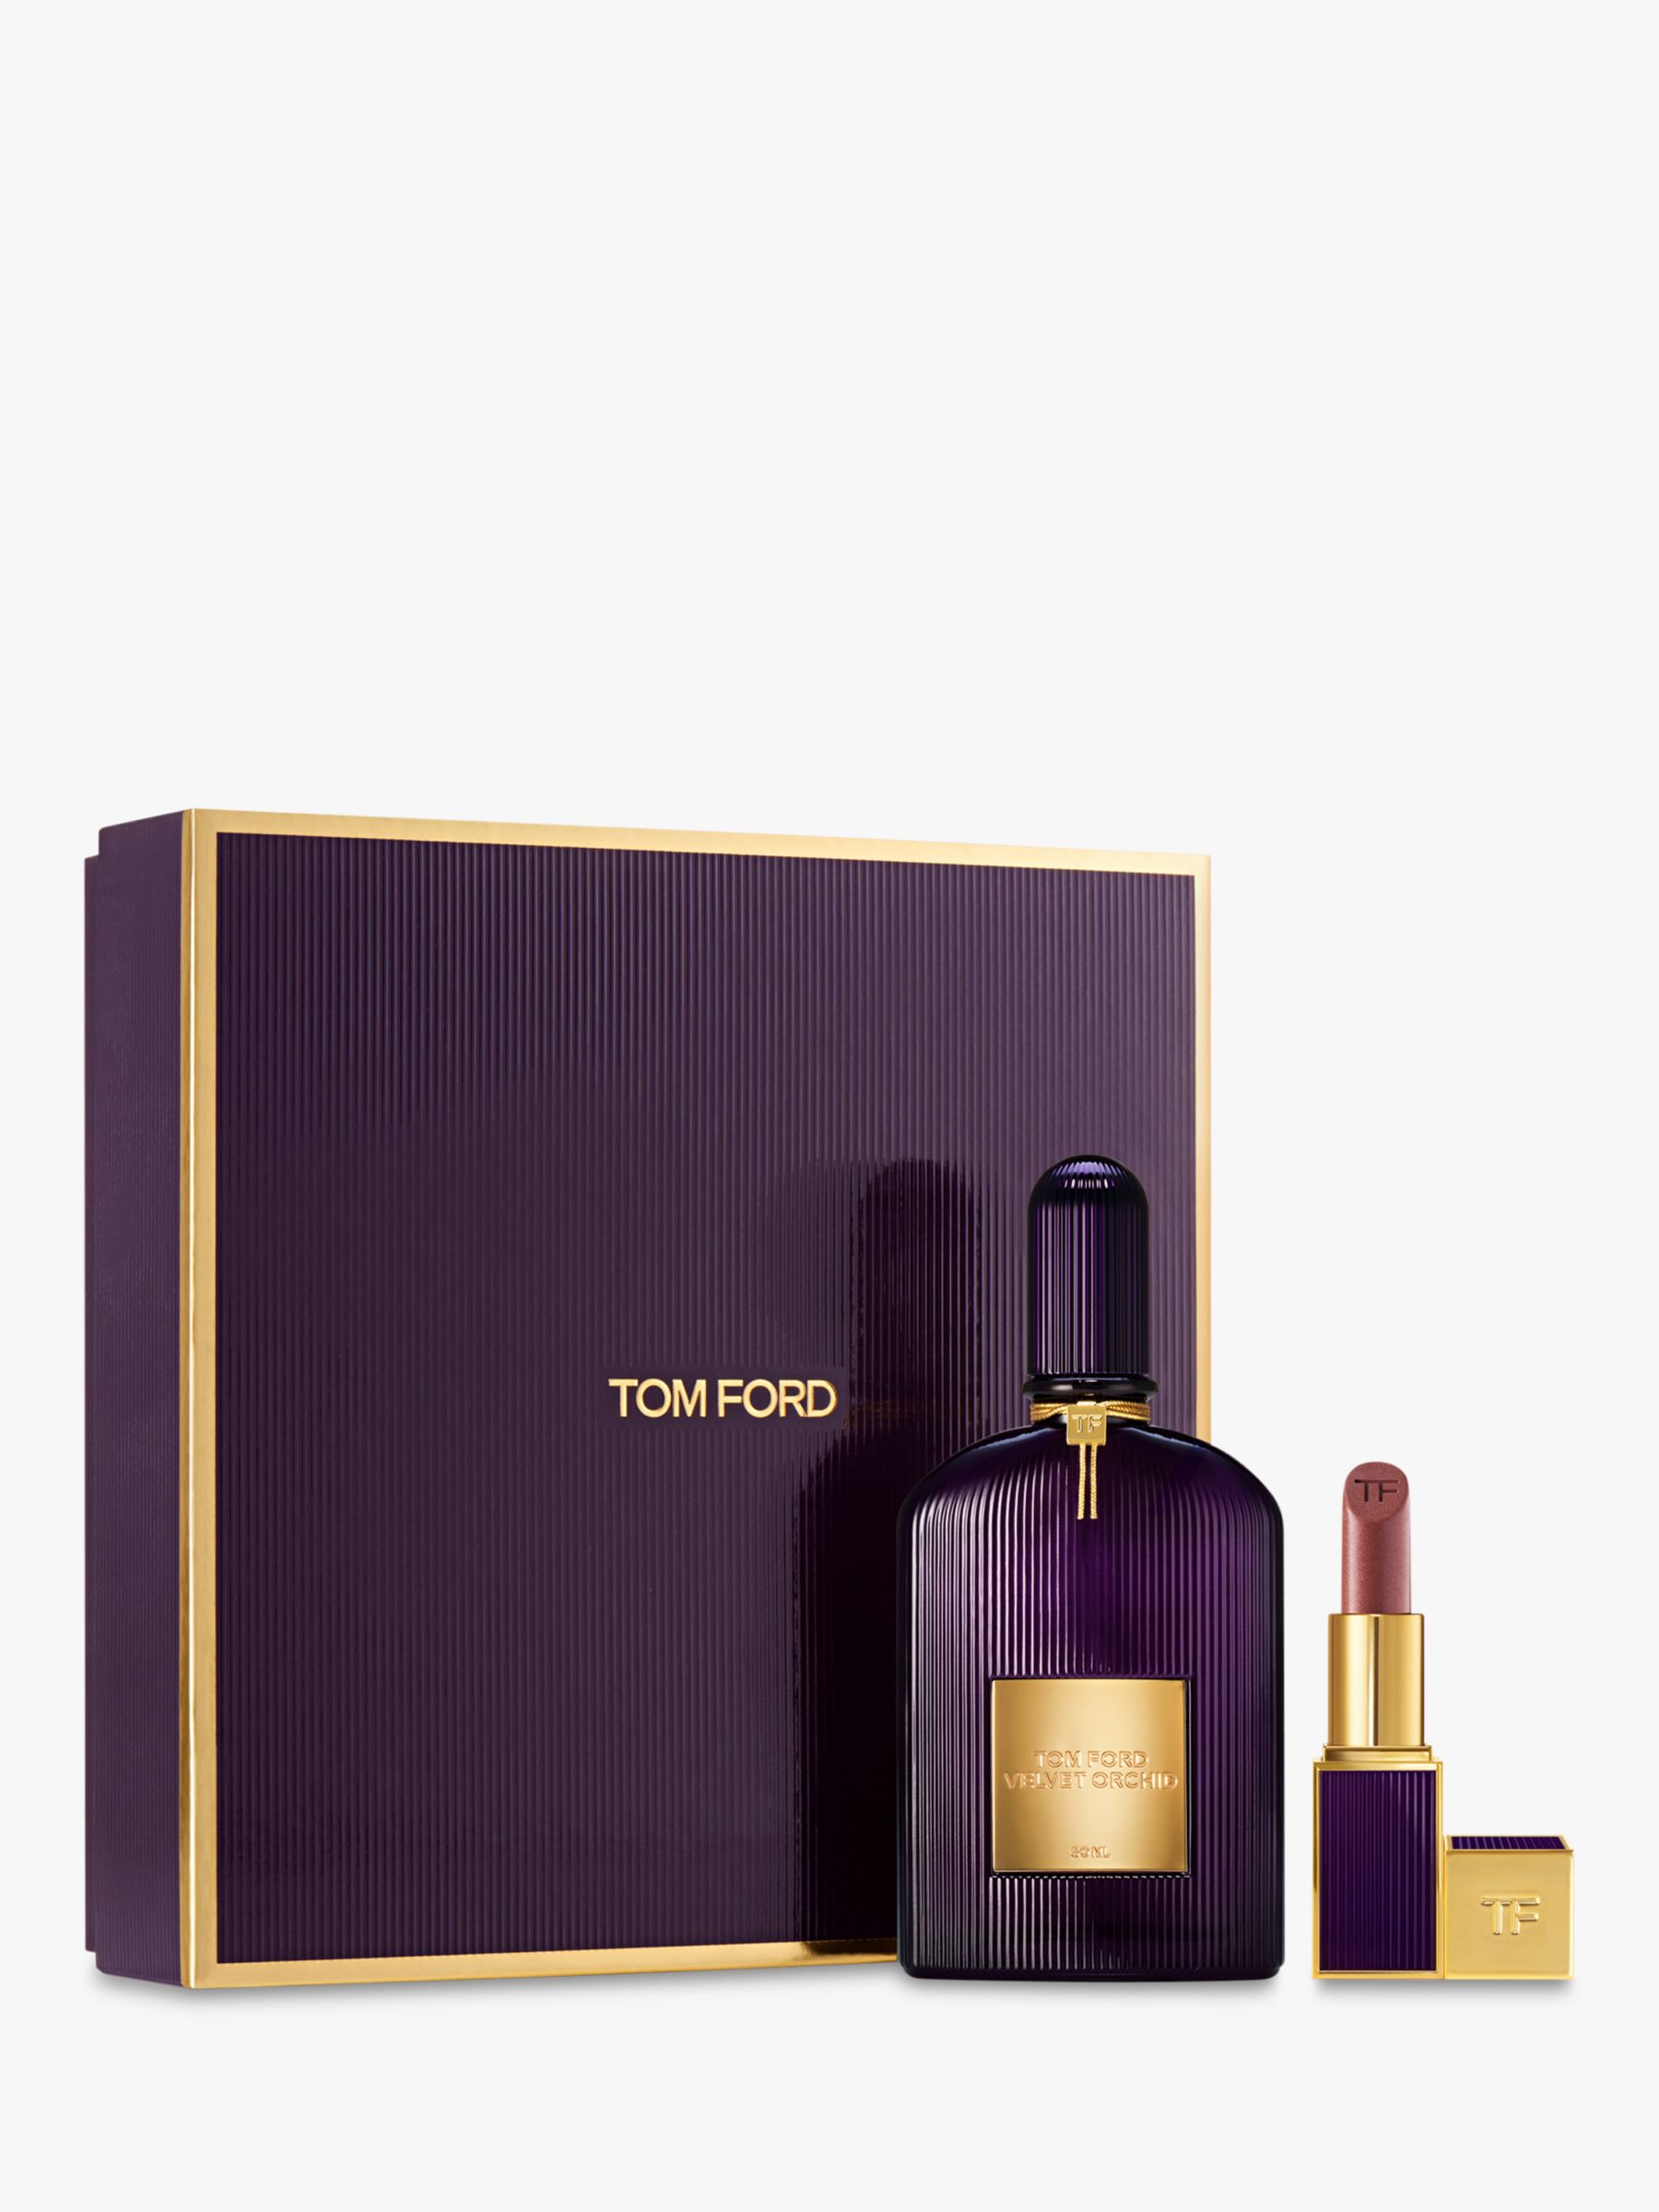 TOM FORD Velvet Orchid 50ml Gift Parfum Set Fragrance de Eau